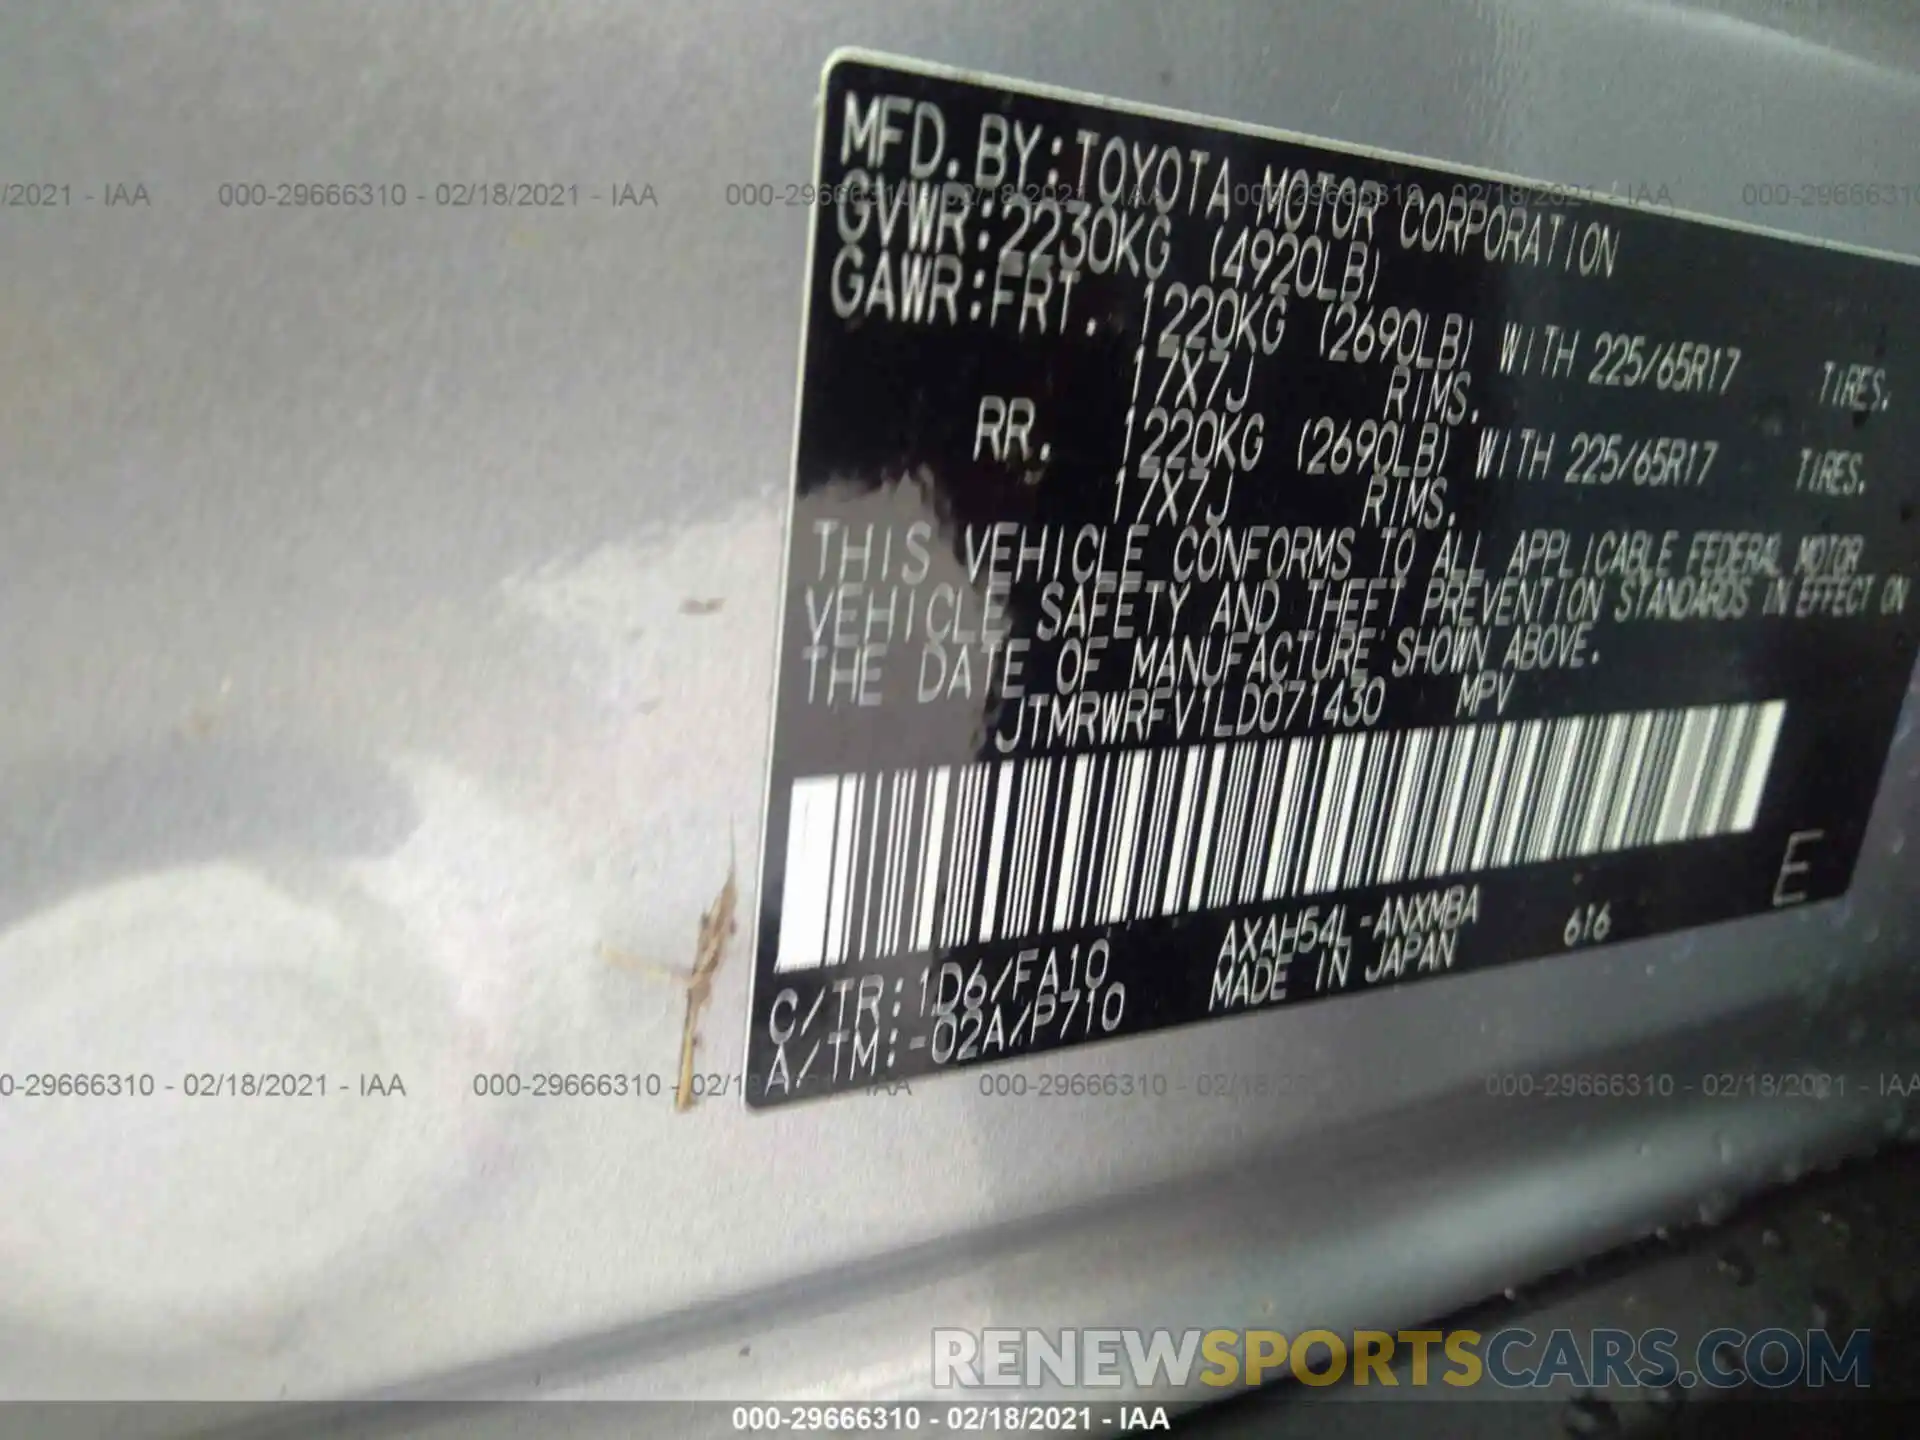 9 Photograph of a damaged car JTMRWRFV1LD071430 TOYOTA RAV4 2020